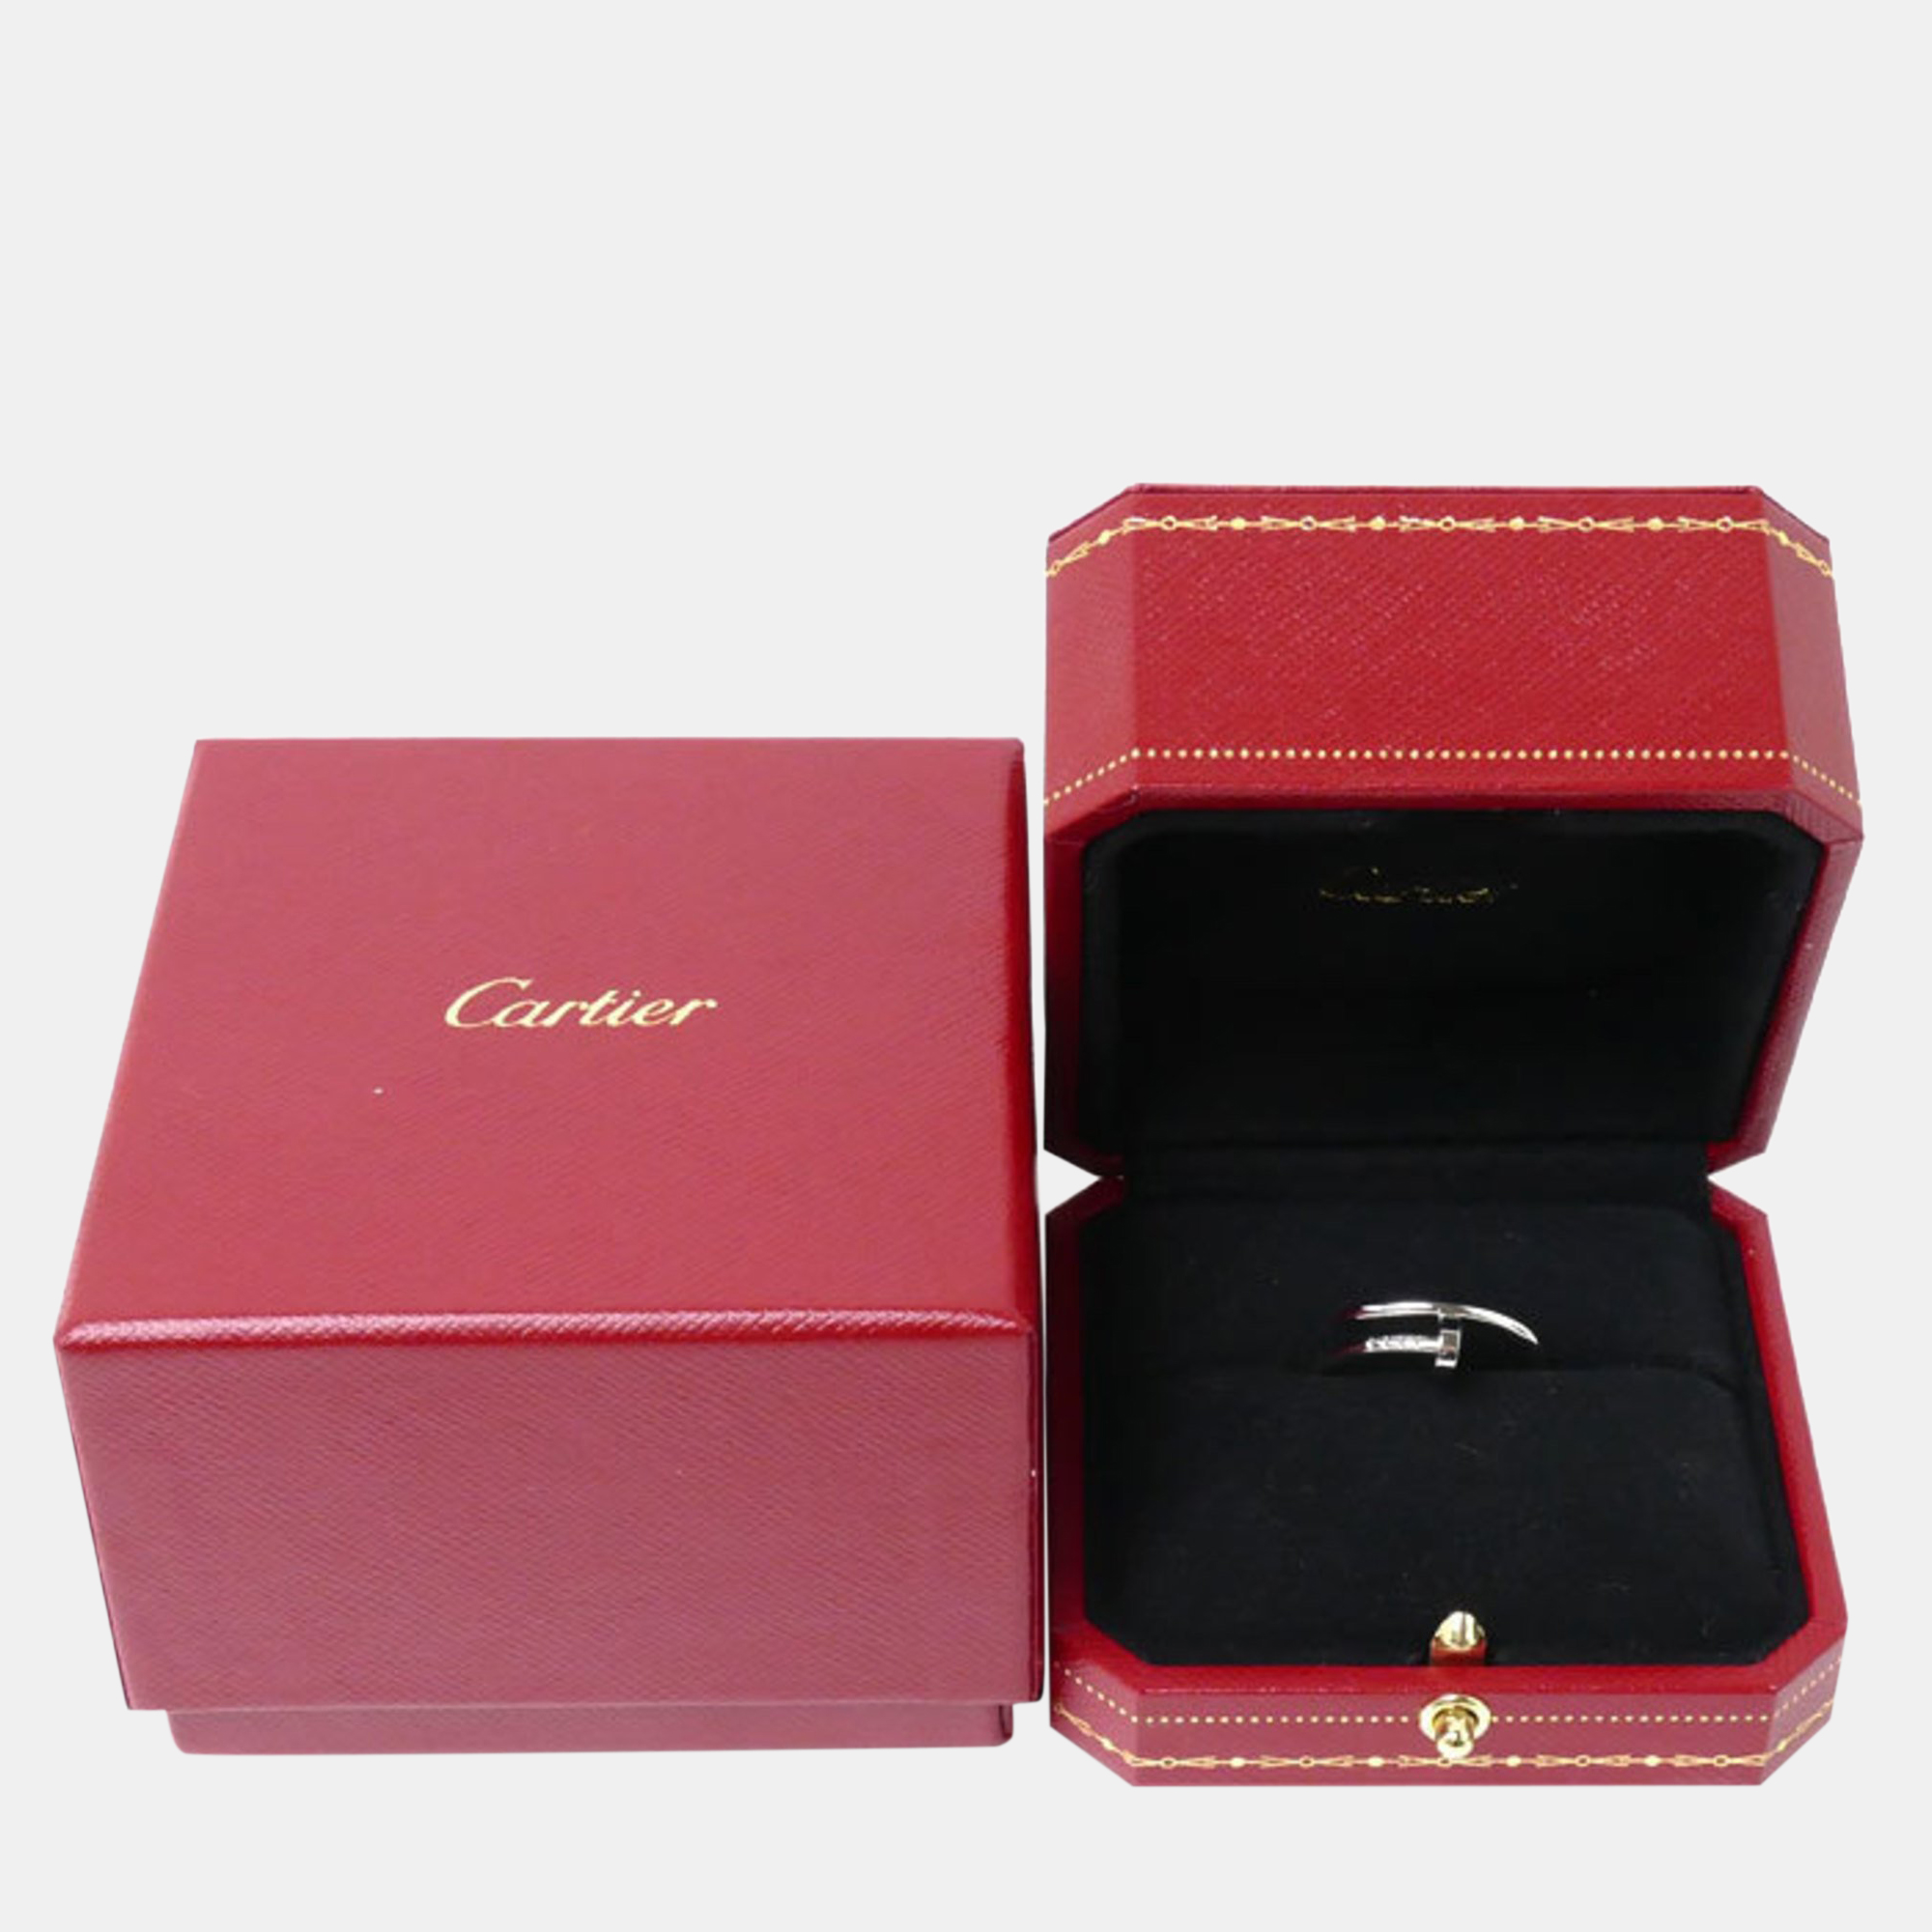 Cartier 18K White Gold Juste Un Clou Band Ring EU 61